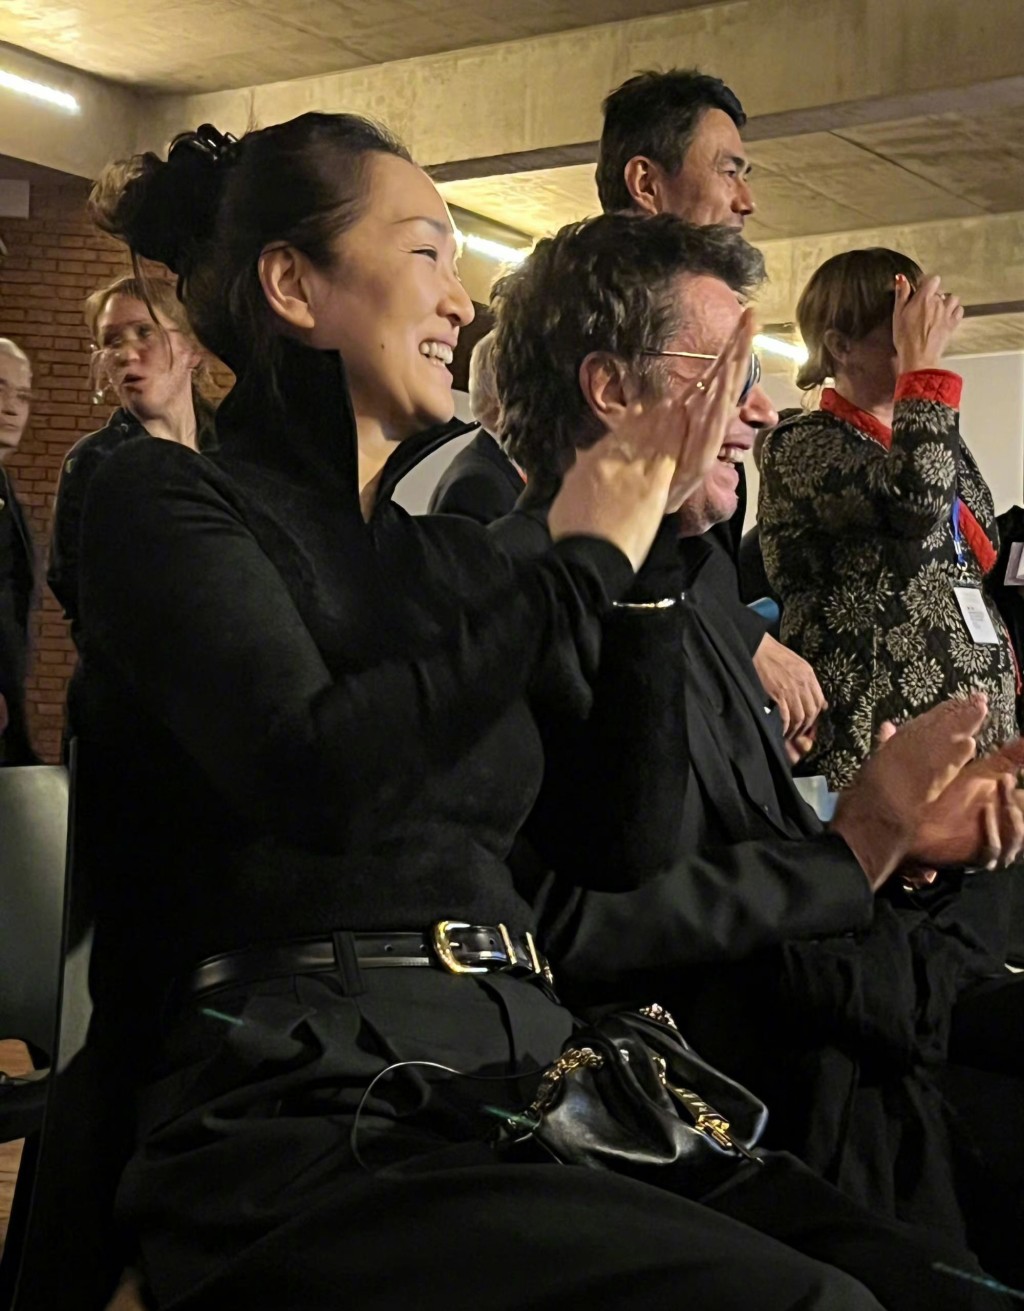 鞏俐和其丈夫Jean-Michel Jarre也現身觀眾席。微博圖